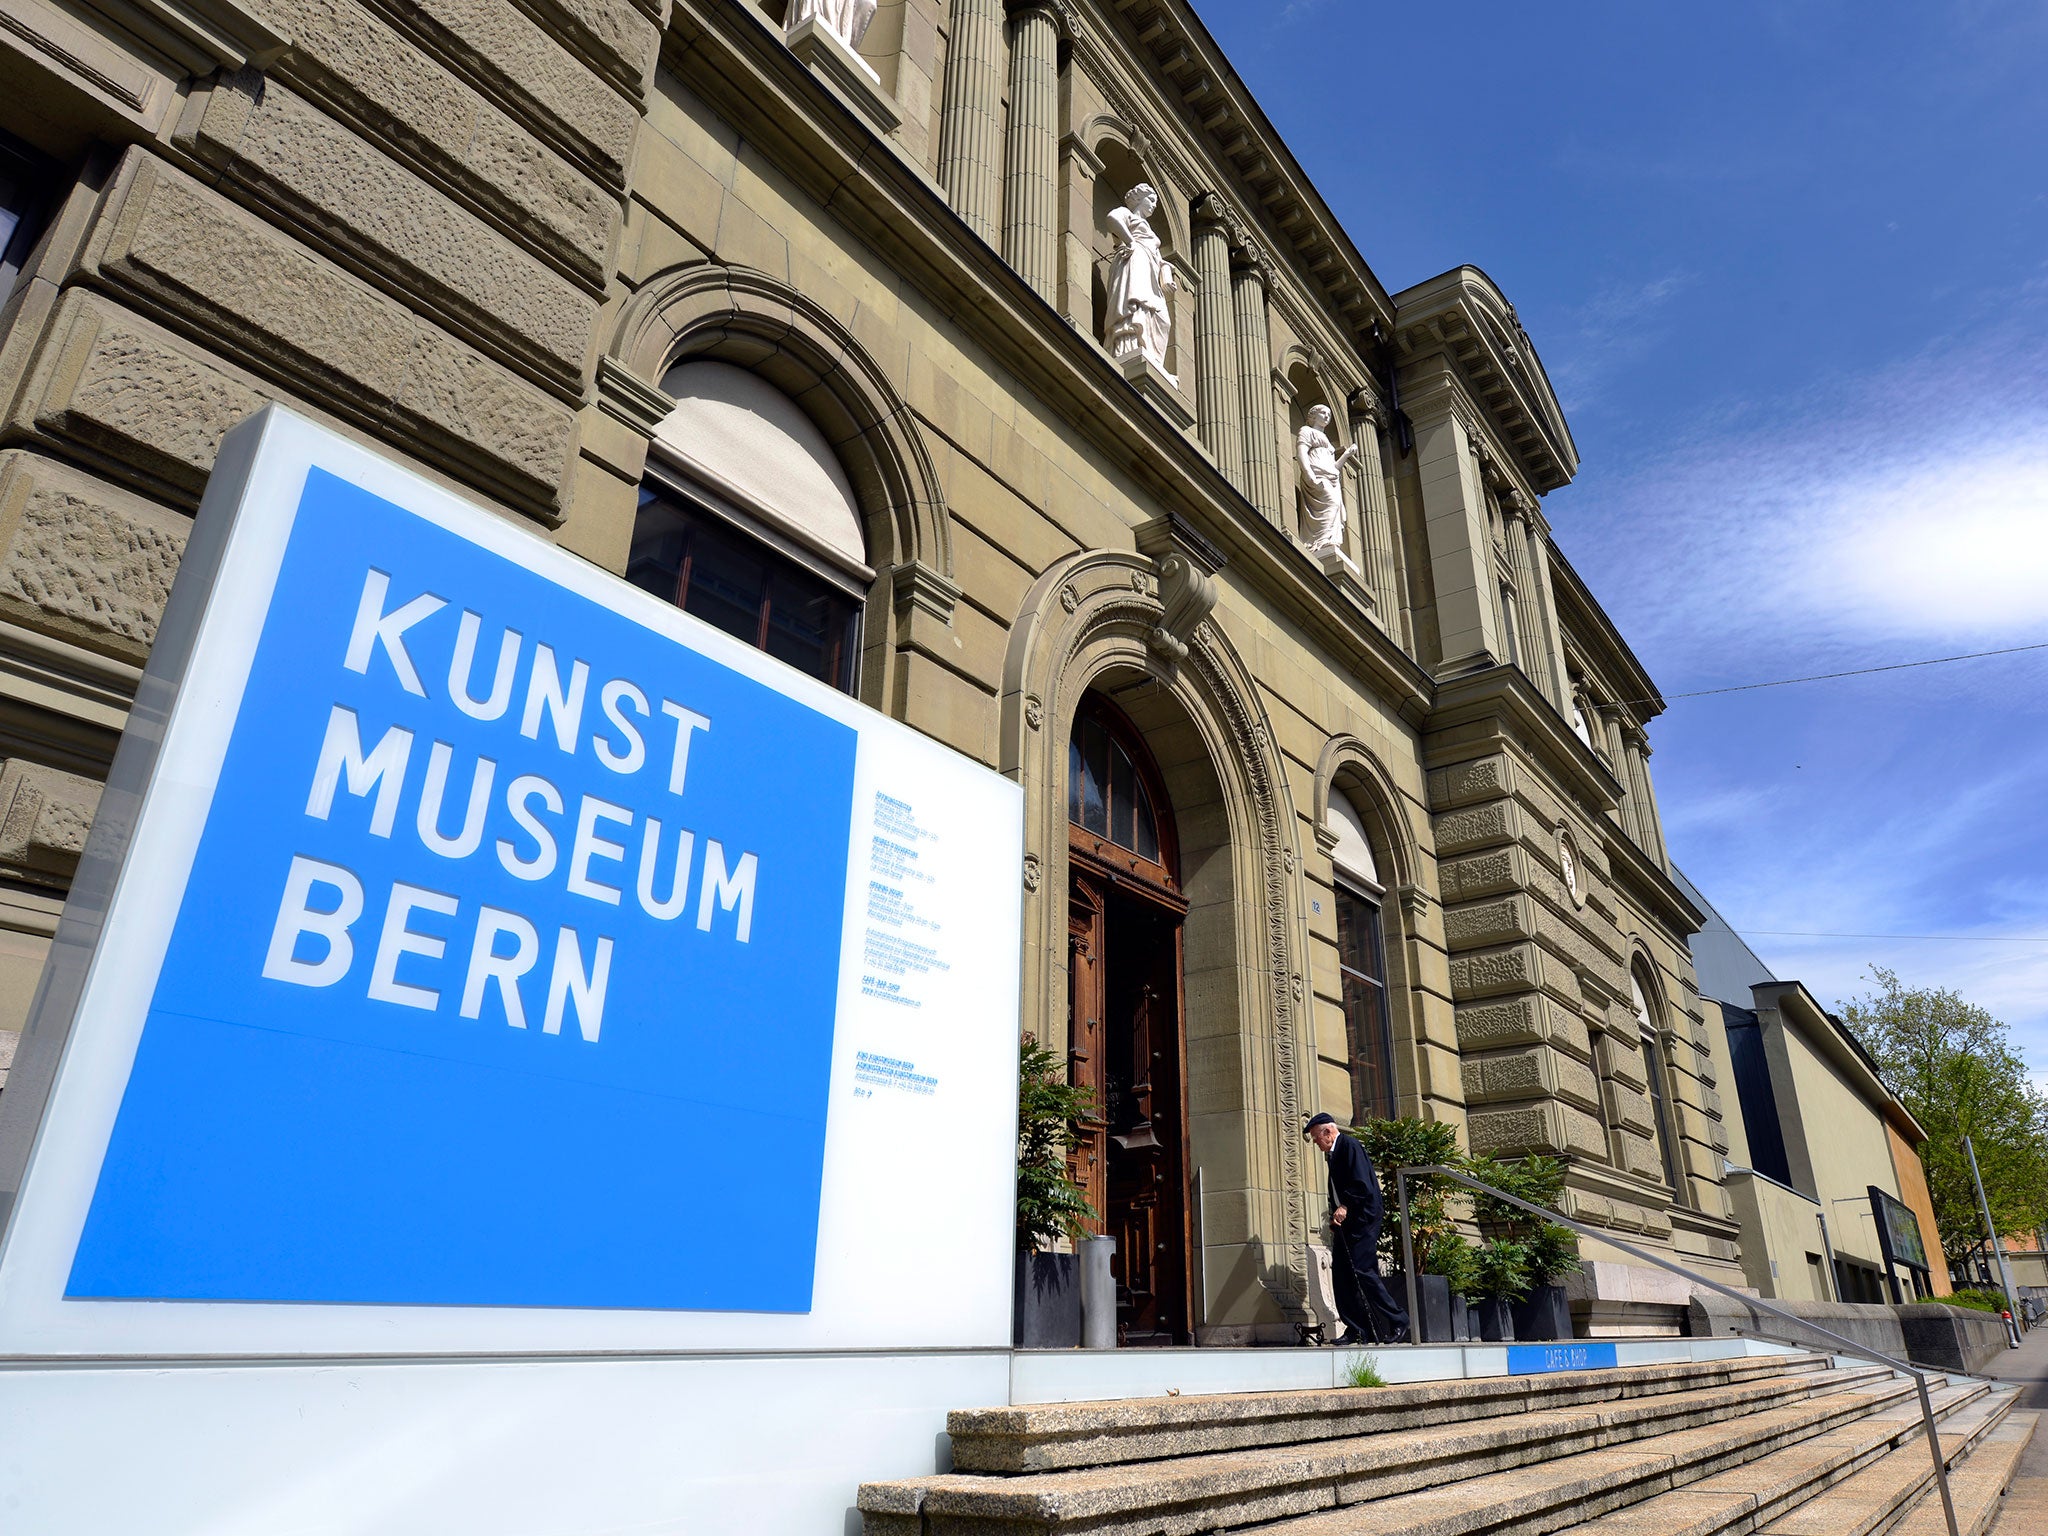 Kunstmuseum in Bern, Switzerland, has accepted Cornelius Gurlitt's Nazi art collection